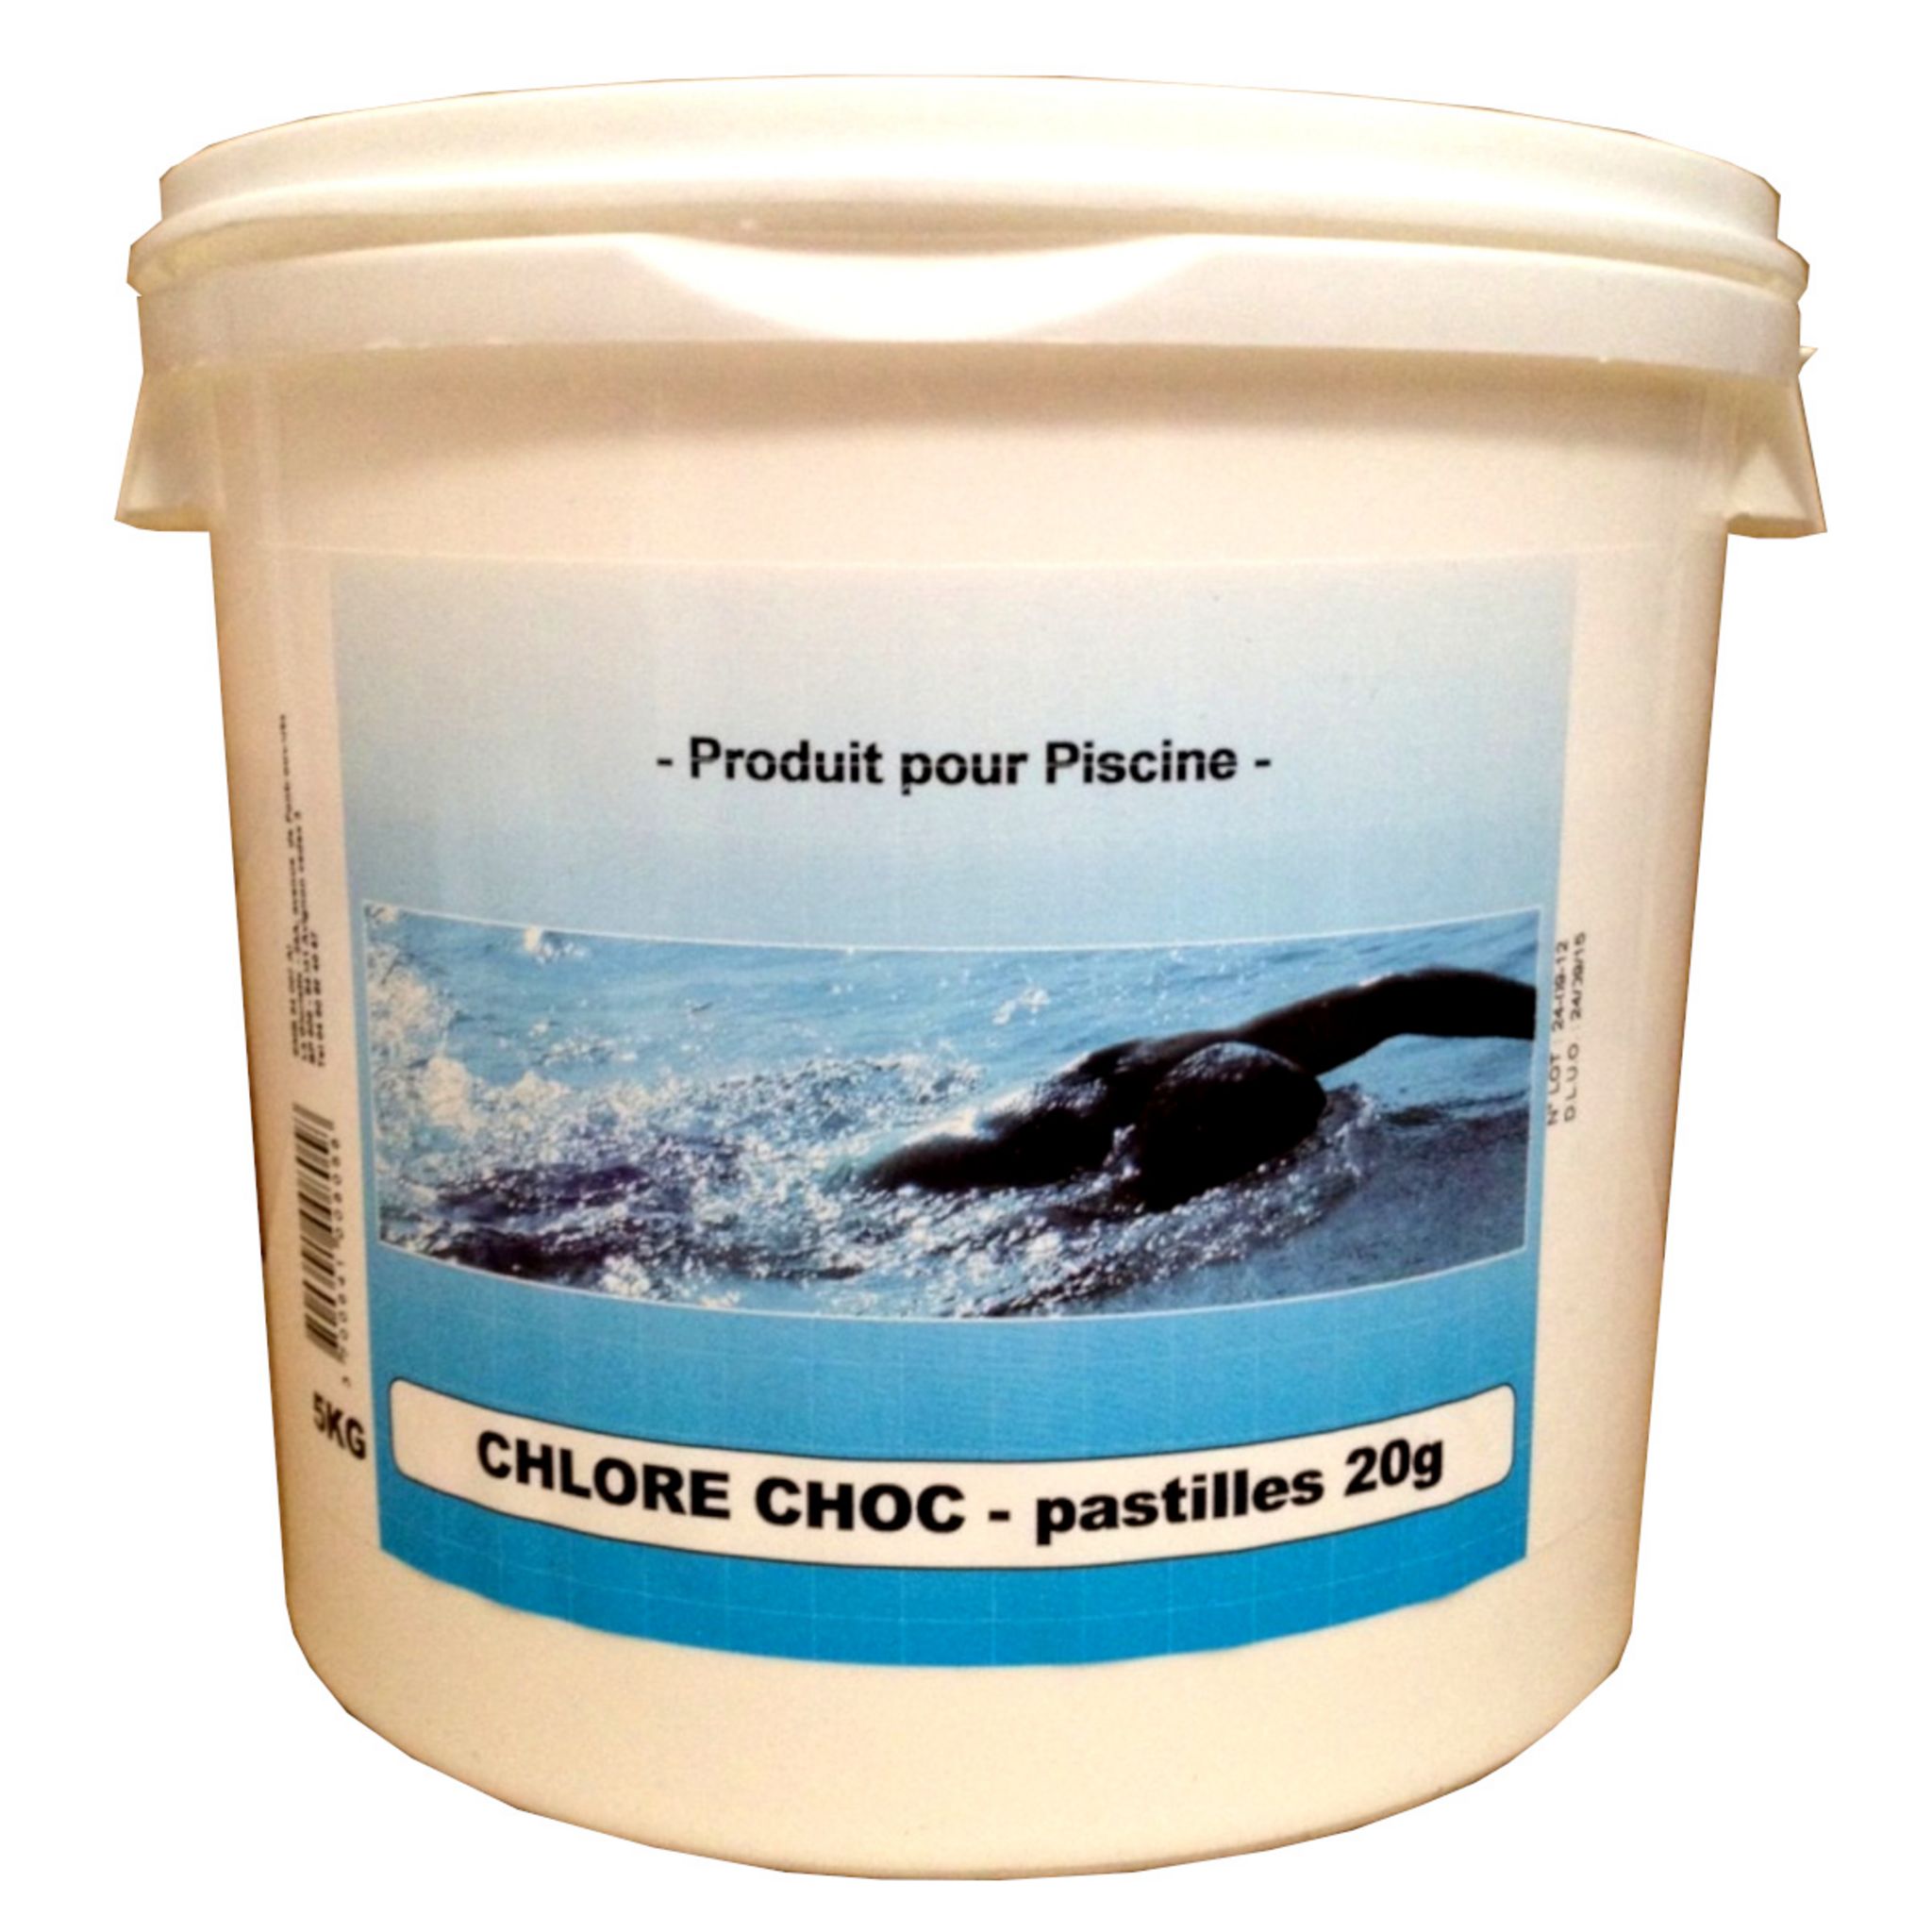 CHLORE CHOC PAST 20G 5KG de Aqualux - Produits piscines pas cher, l